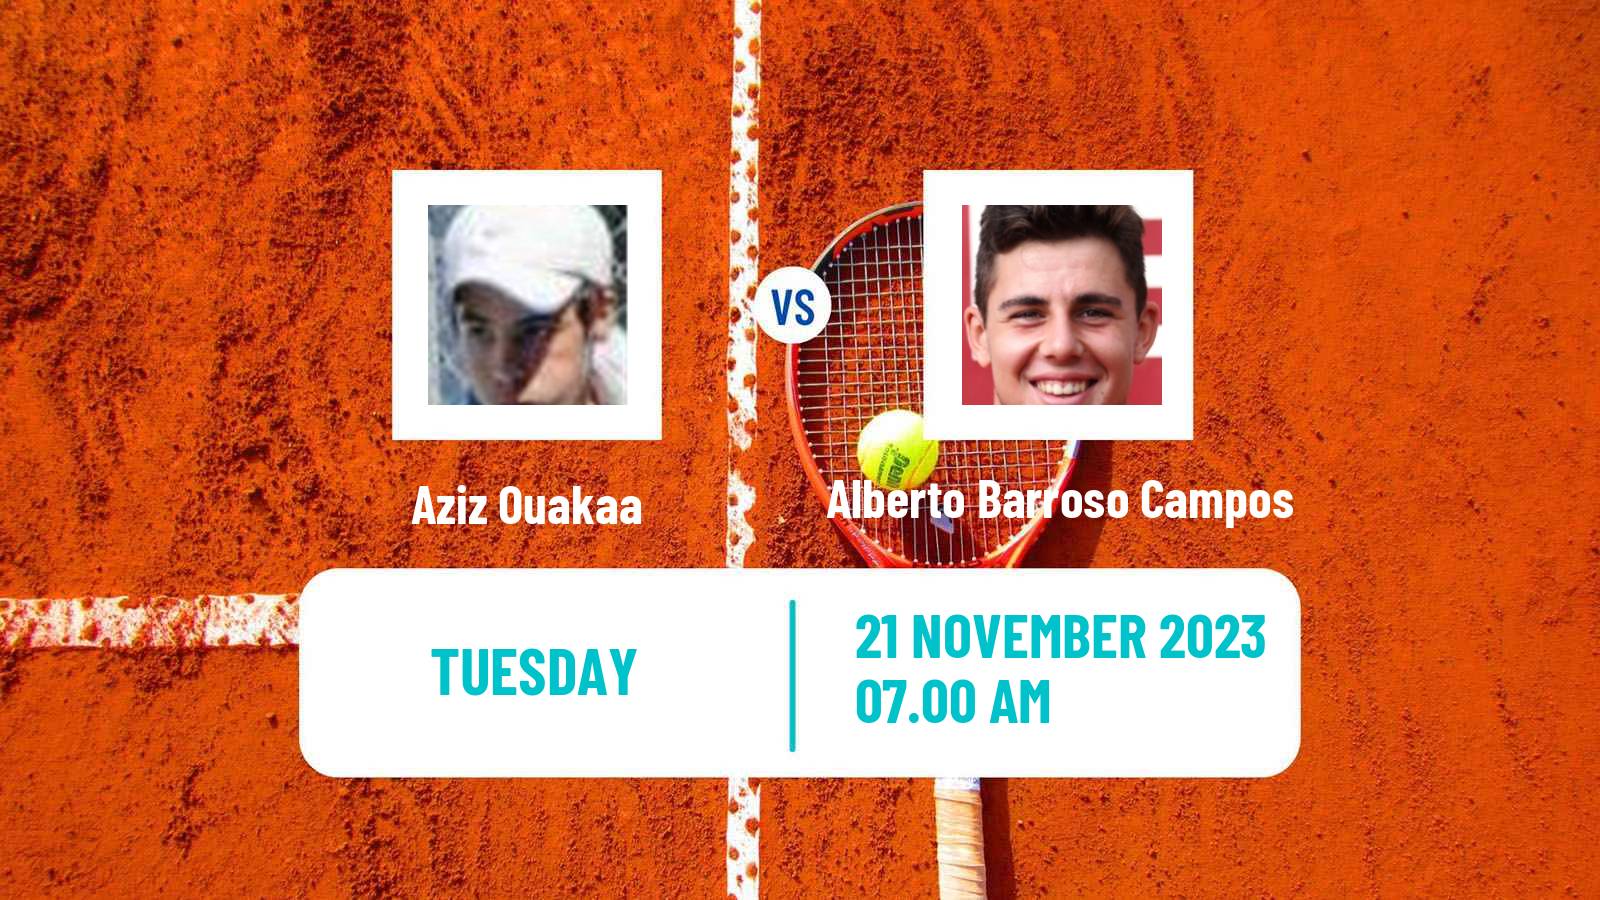 Tennis ITF M25 Monastir 9 Men 2023 Aziz Ouakaa - Alberto Barroso Campos